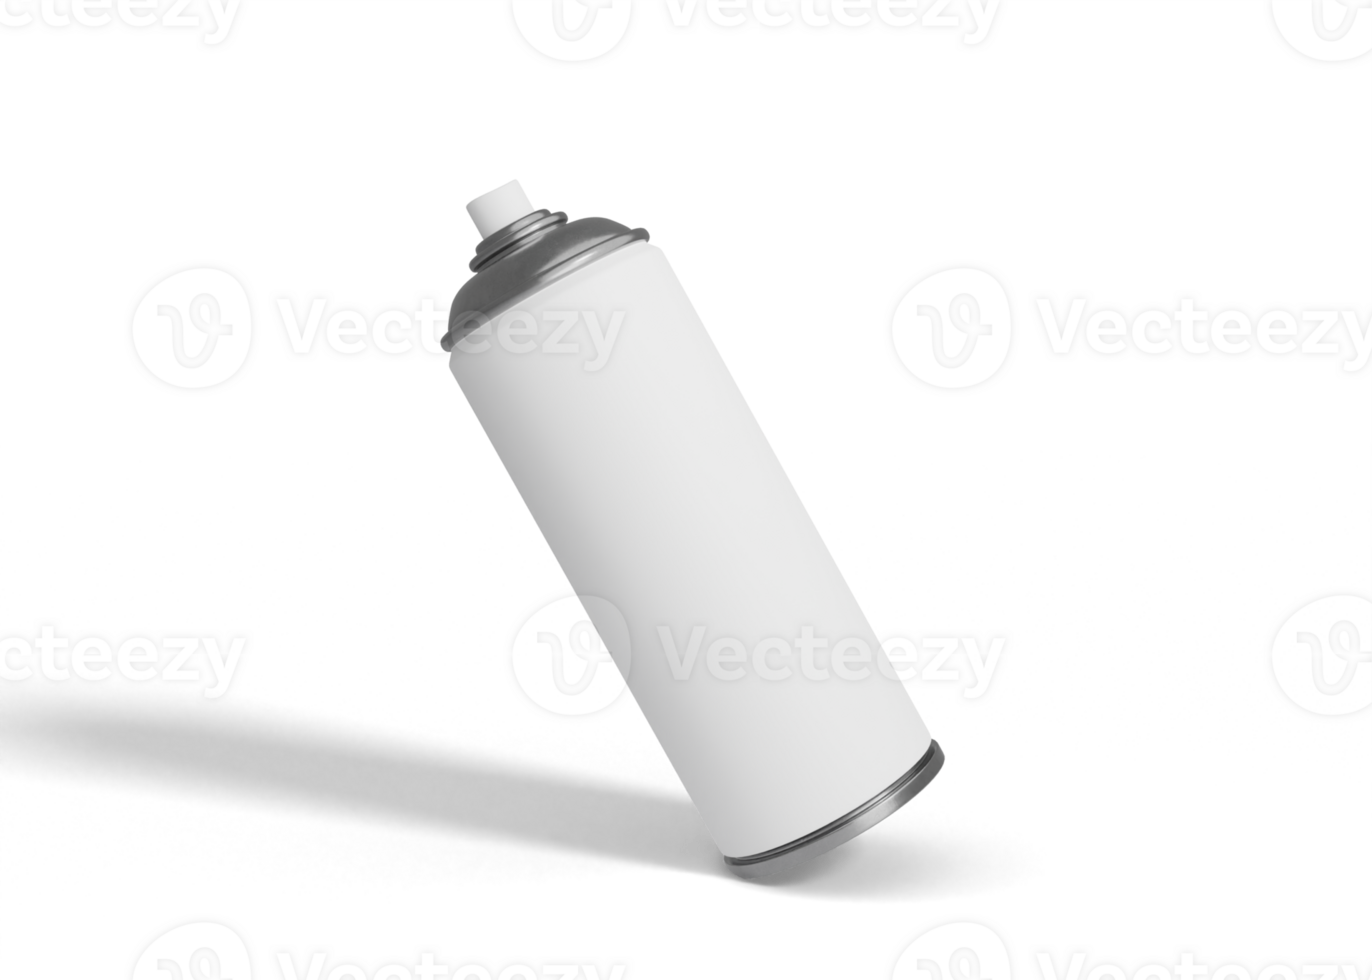 Spray bottle mockup png